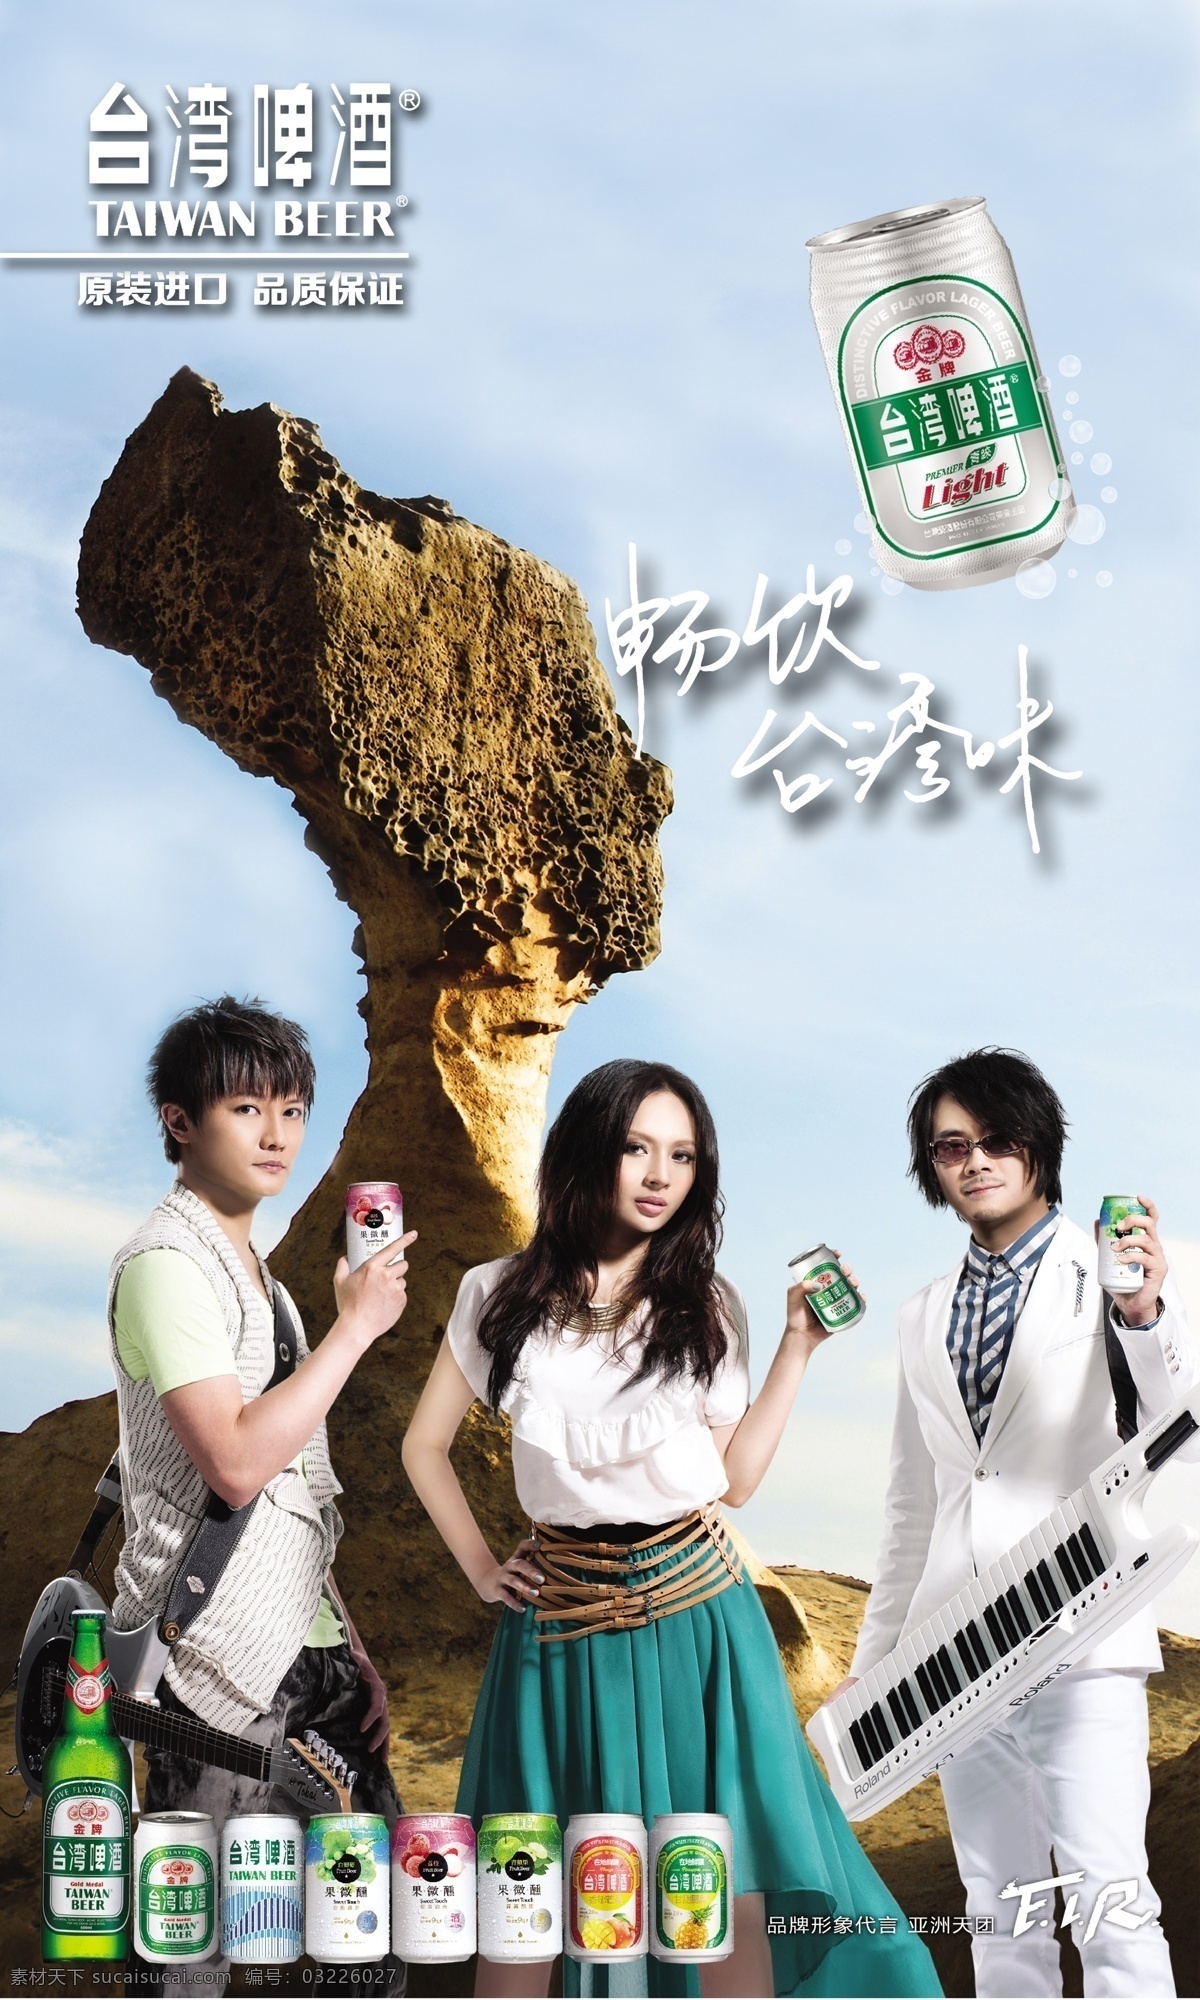 台湾啤酒 台湾 啤酒 美食 食品广告 啤酒海报 广告设计模板 源文件